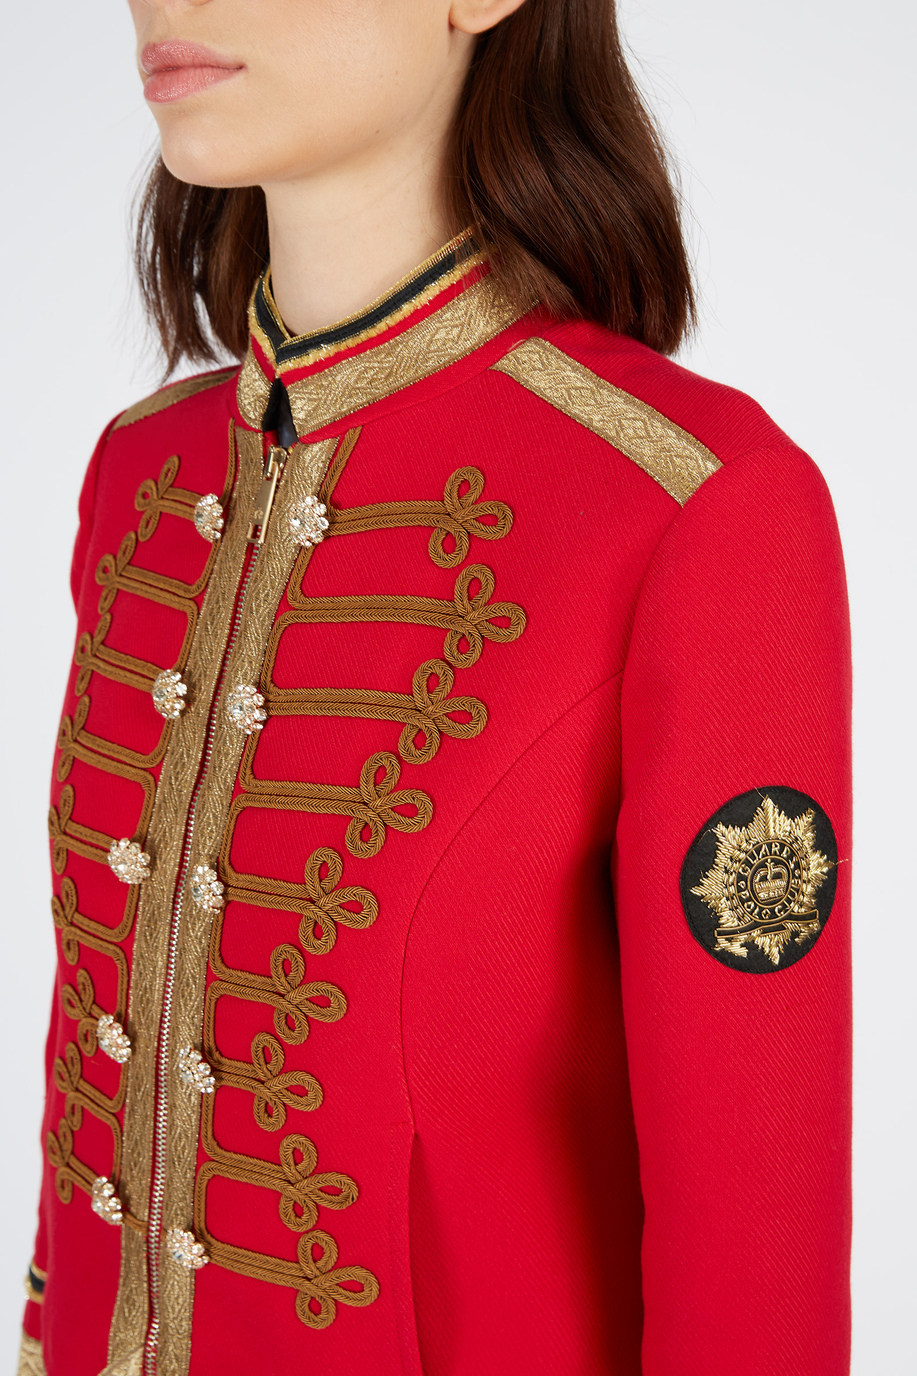 Women’s Regular Fit Single-Breasted Blazer Jacket Guards - Elegant looks for her | La Martina - Official Online Shop